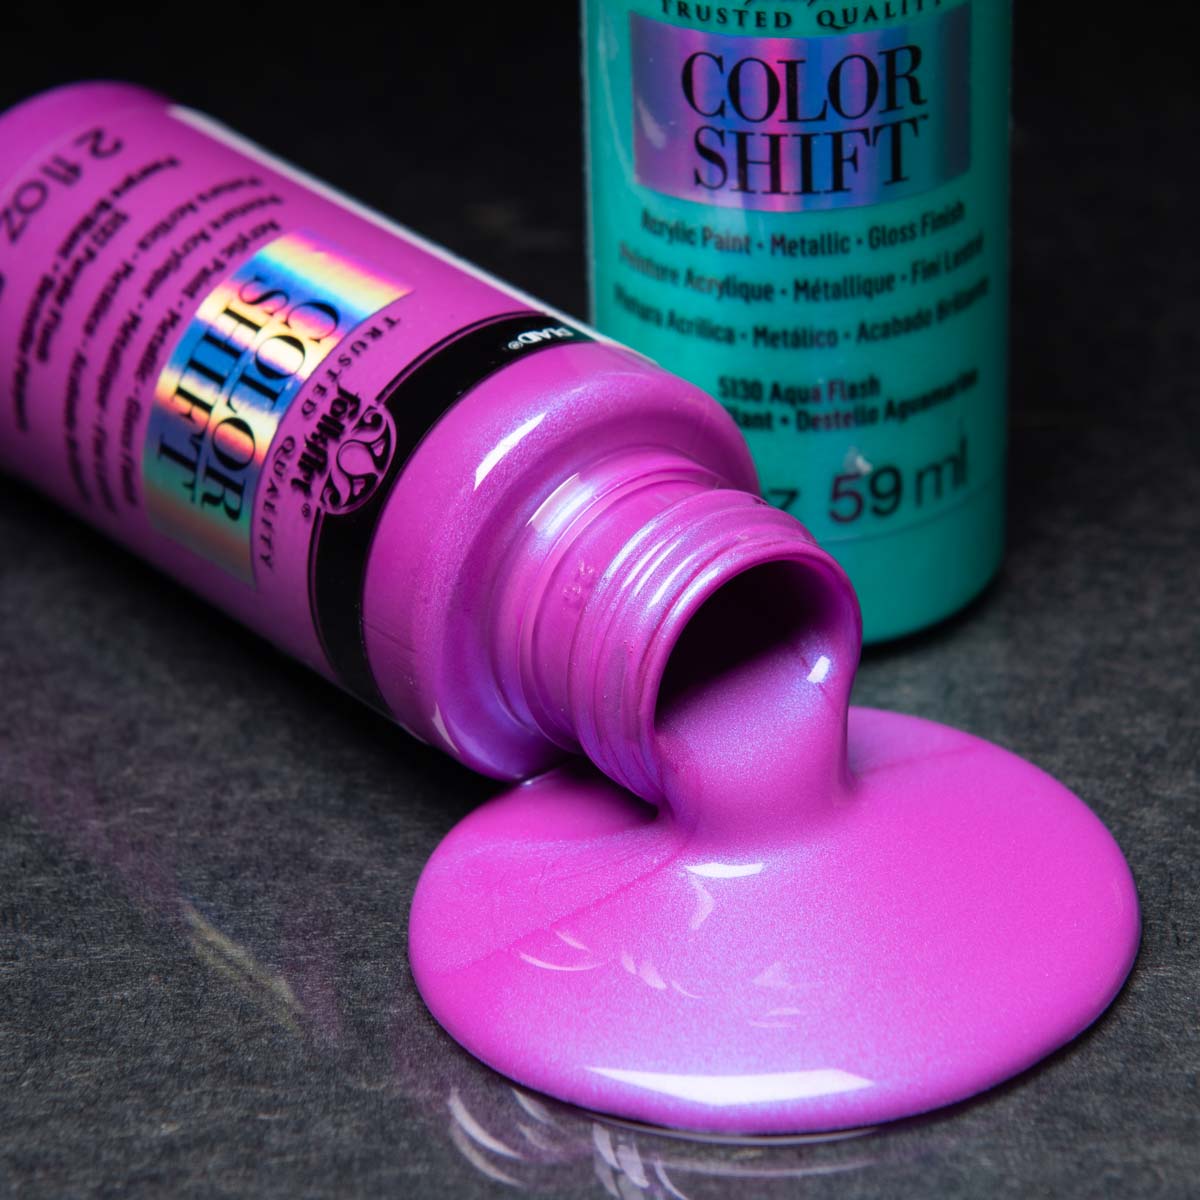 Shop Plaid FolkArt ® Color Shift™ Acrylic Paint Set 4 Color - PROMOCS4 -  PROMOCS4